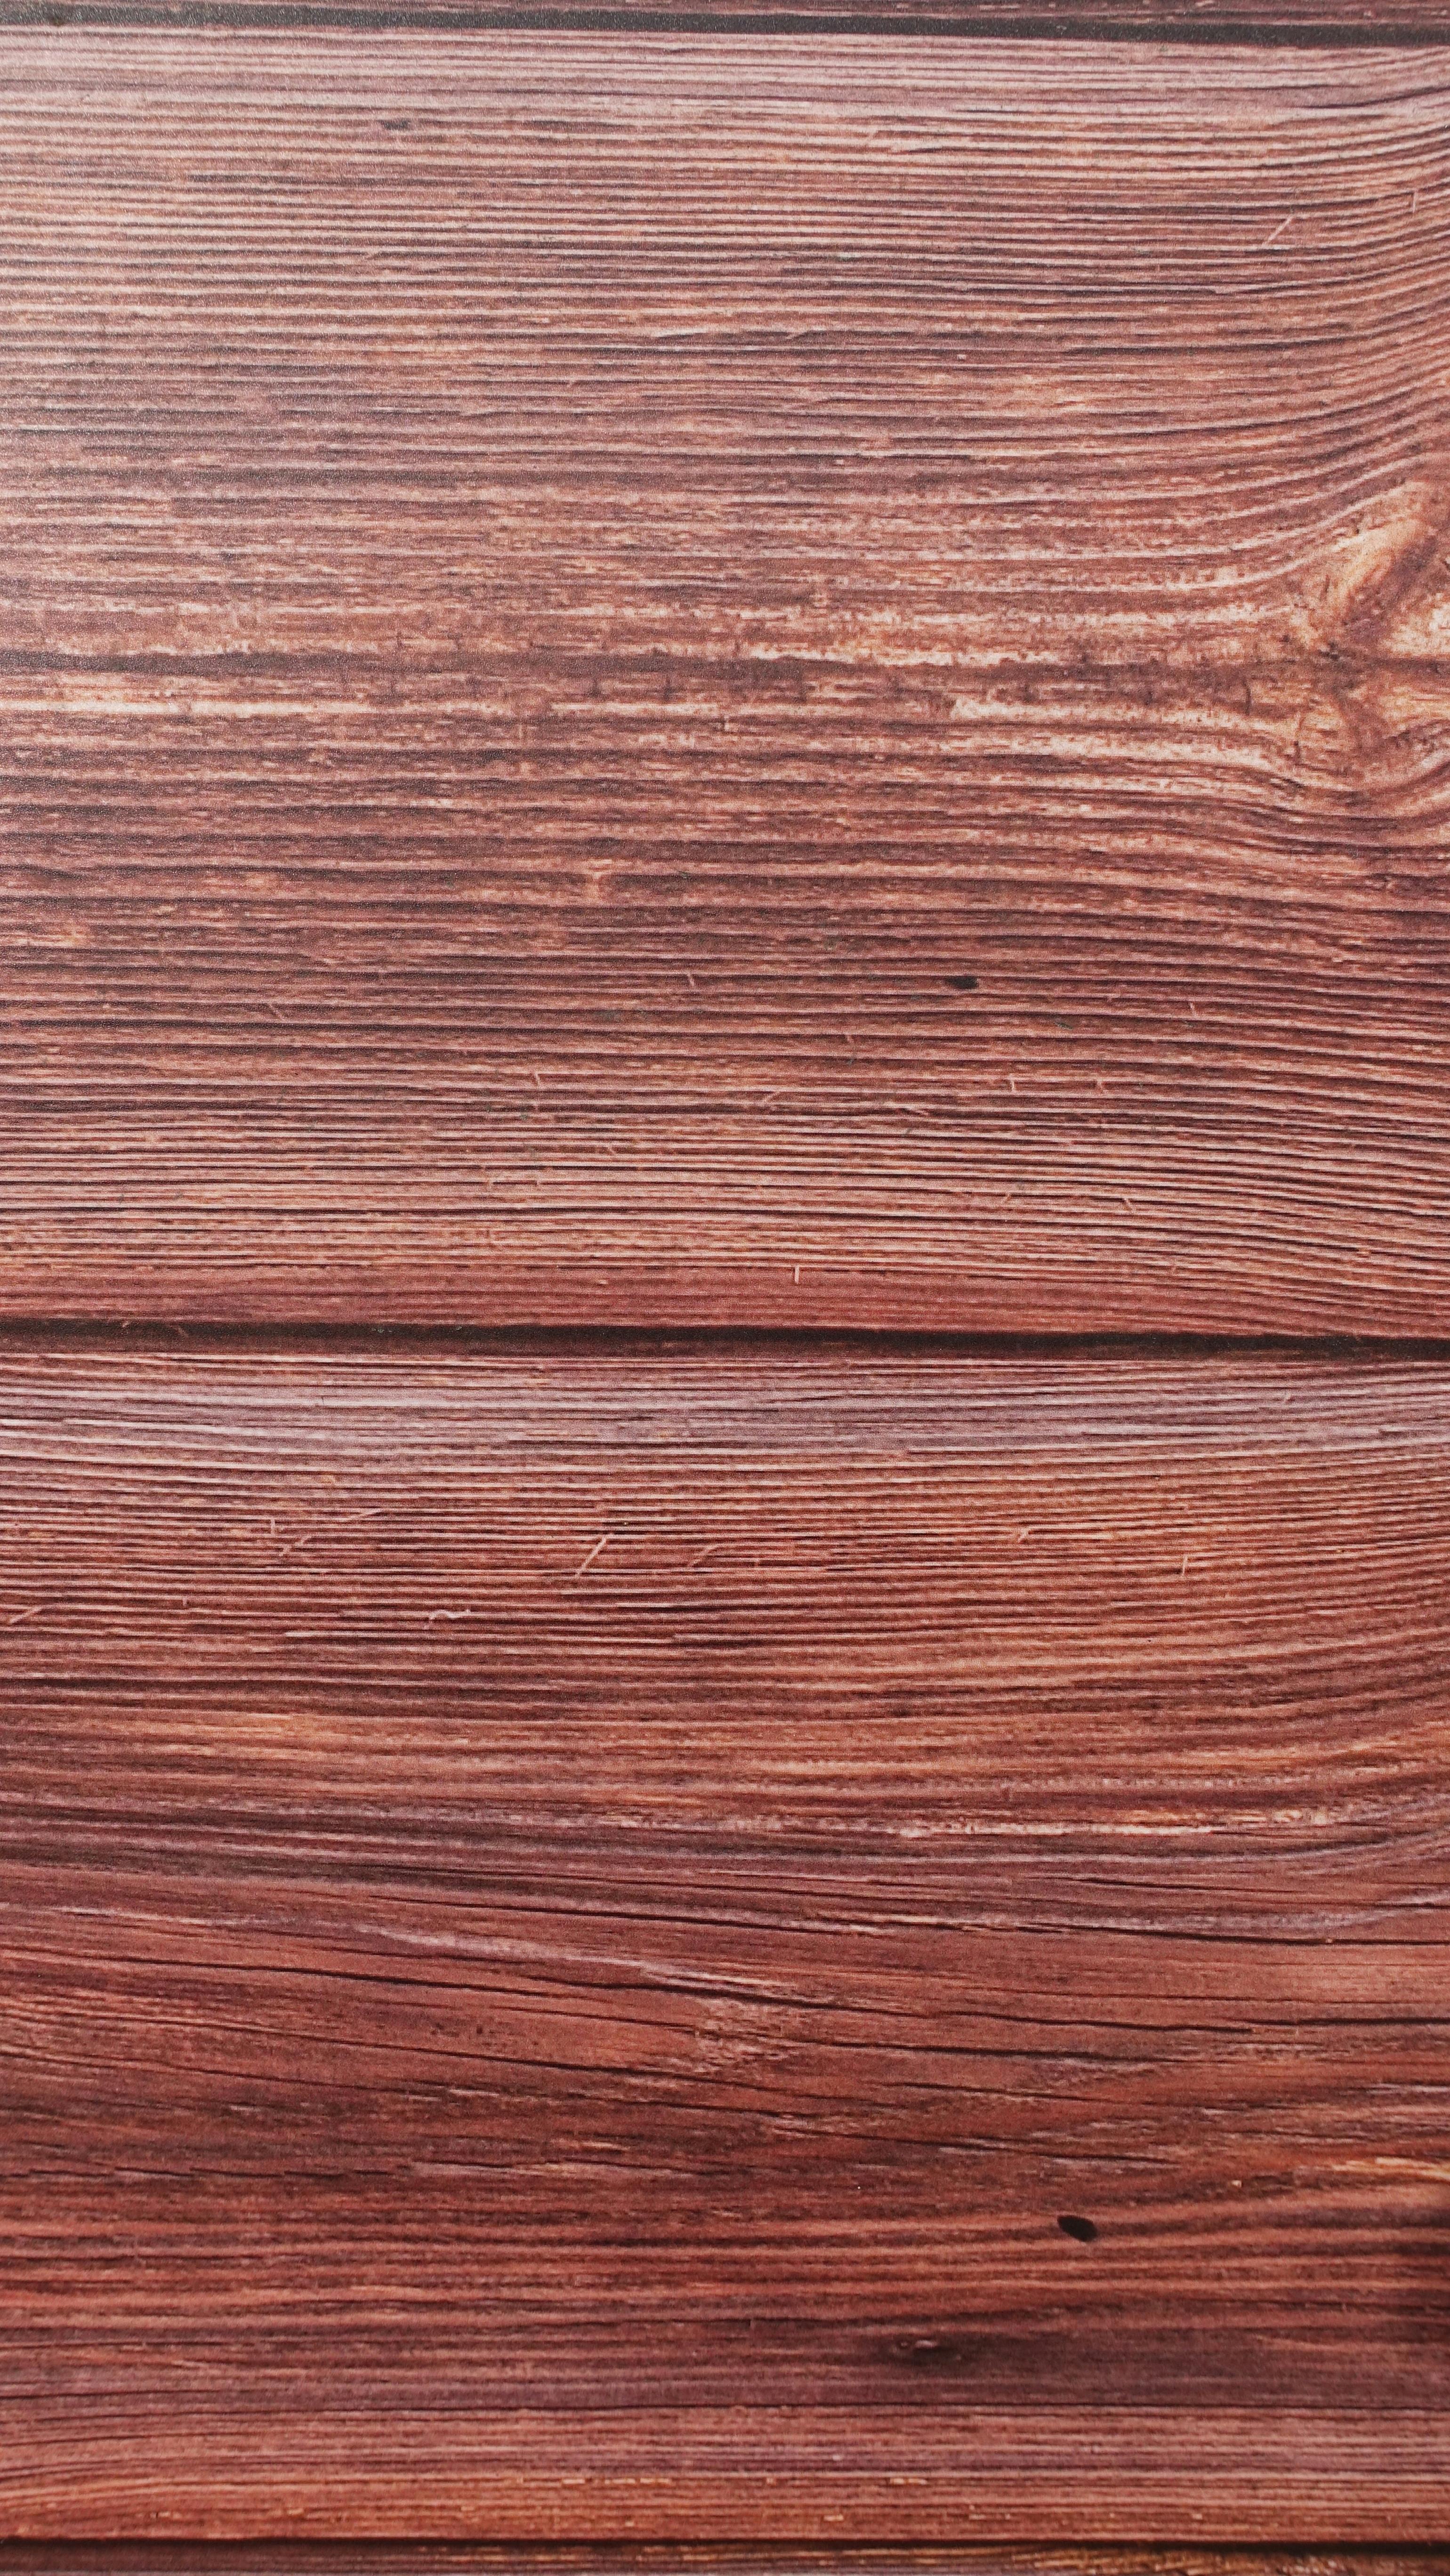 Free stock photo of oak, oak wood, planks